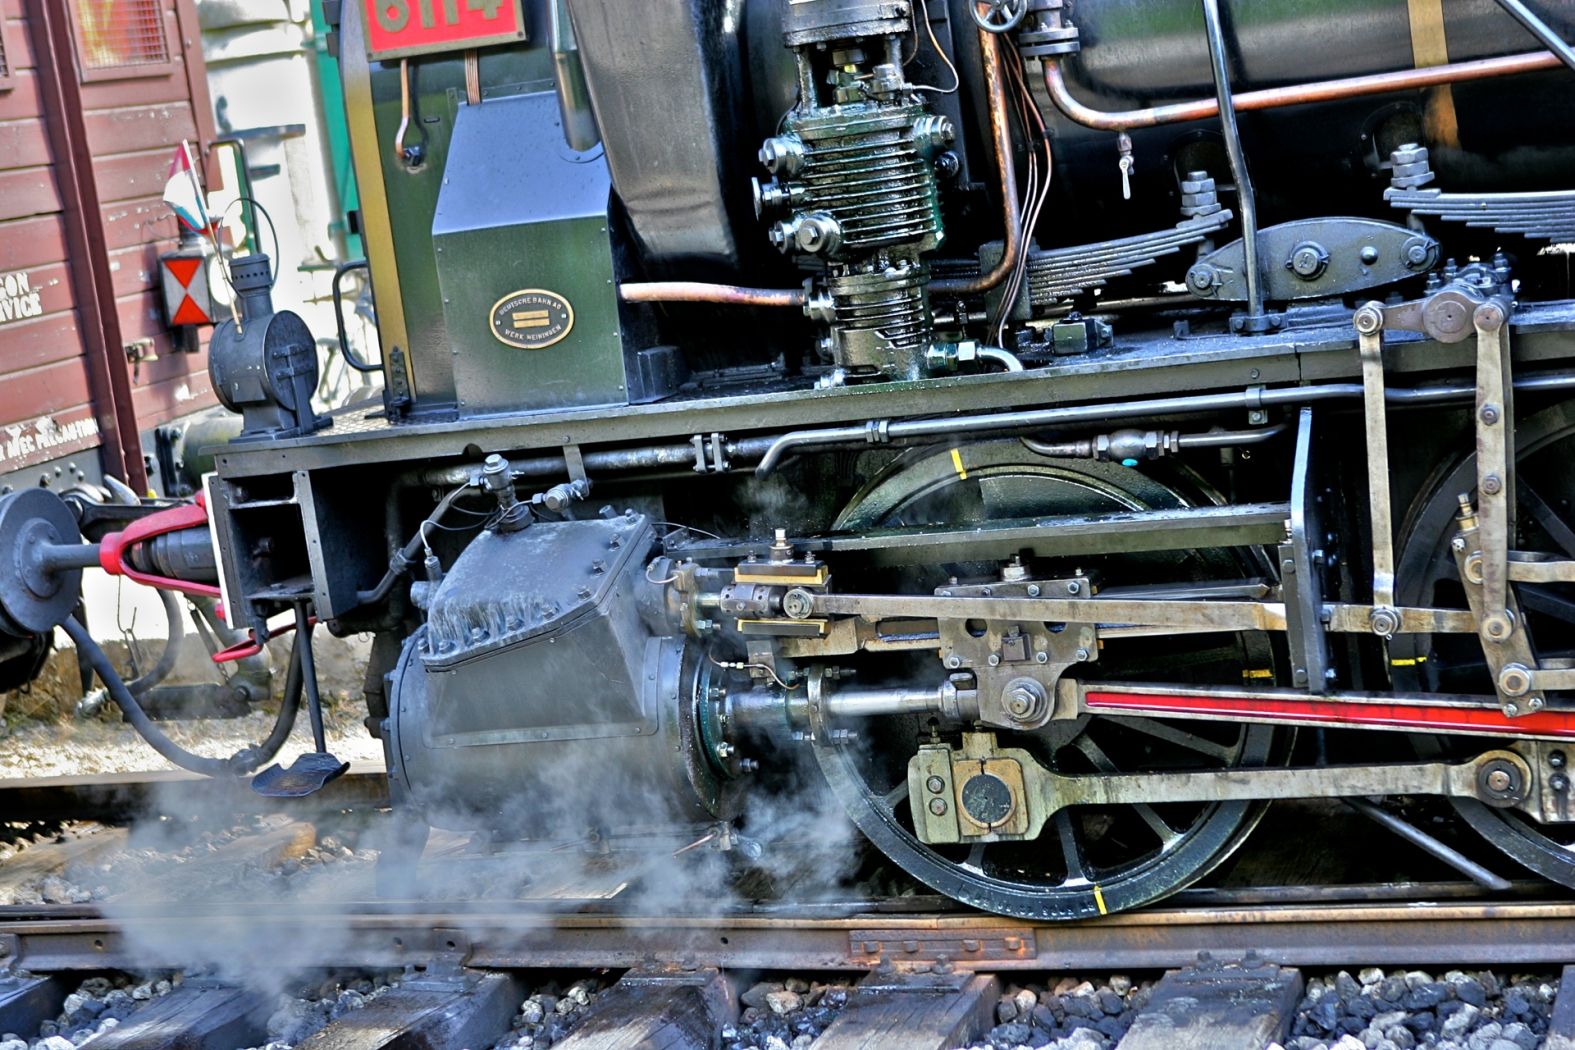 Historical steam train "Train 1900"